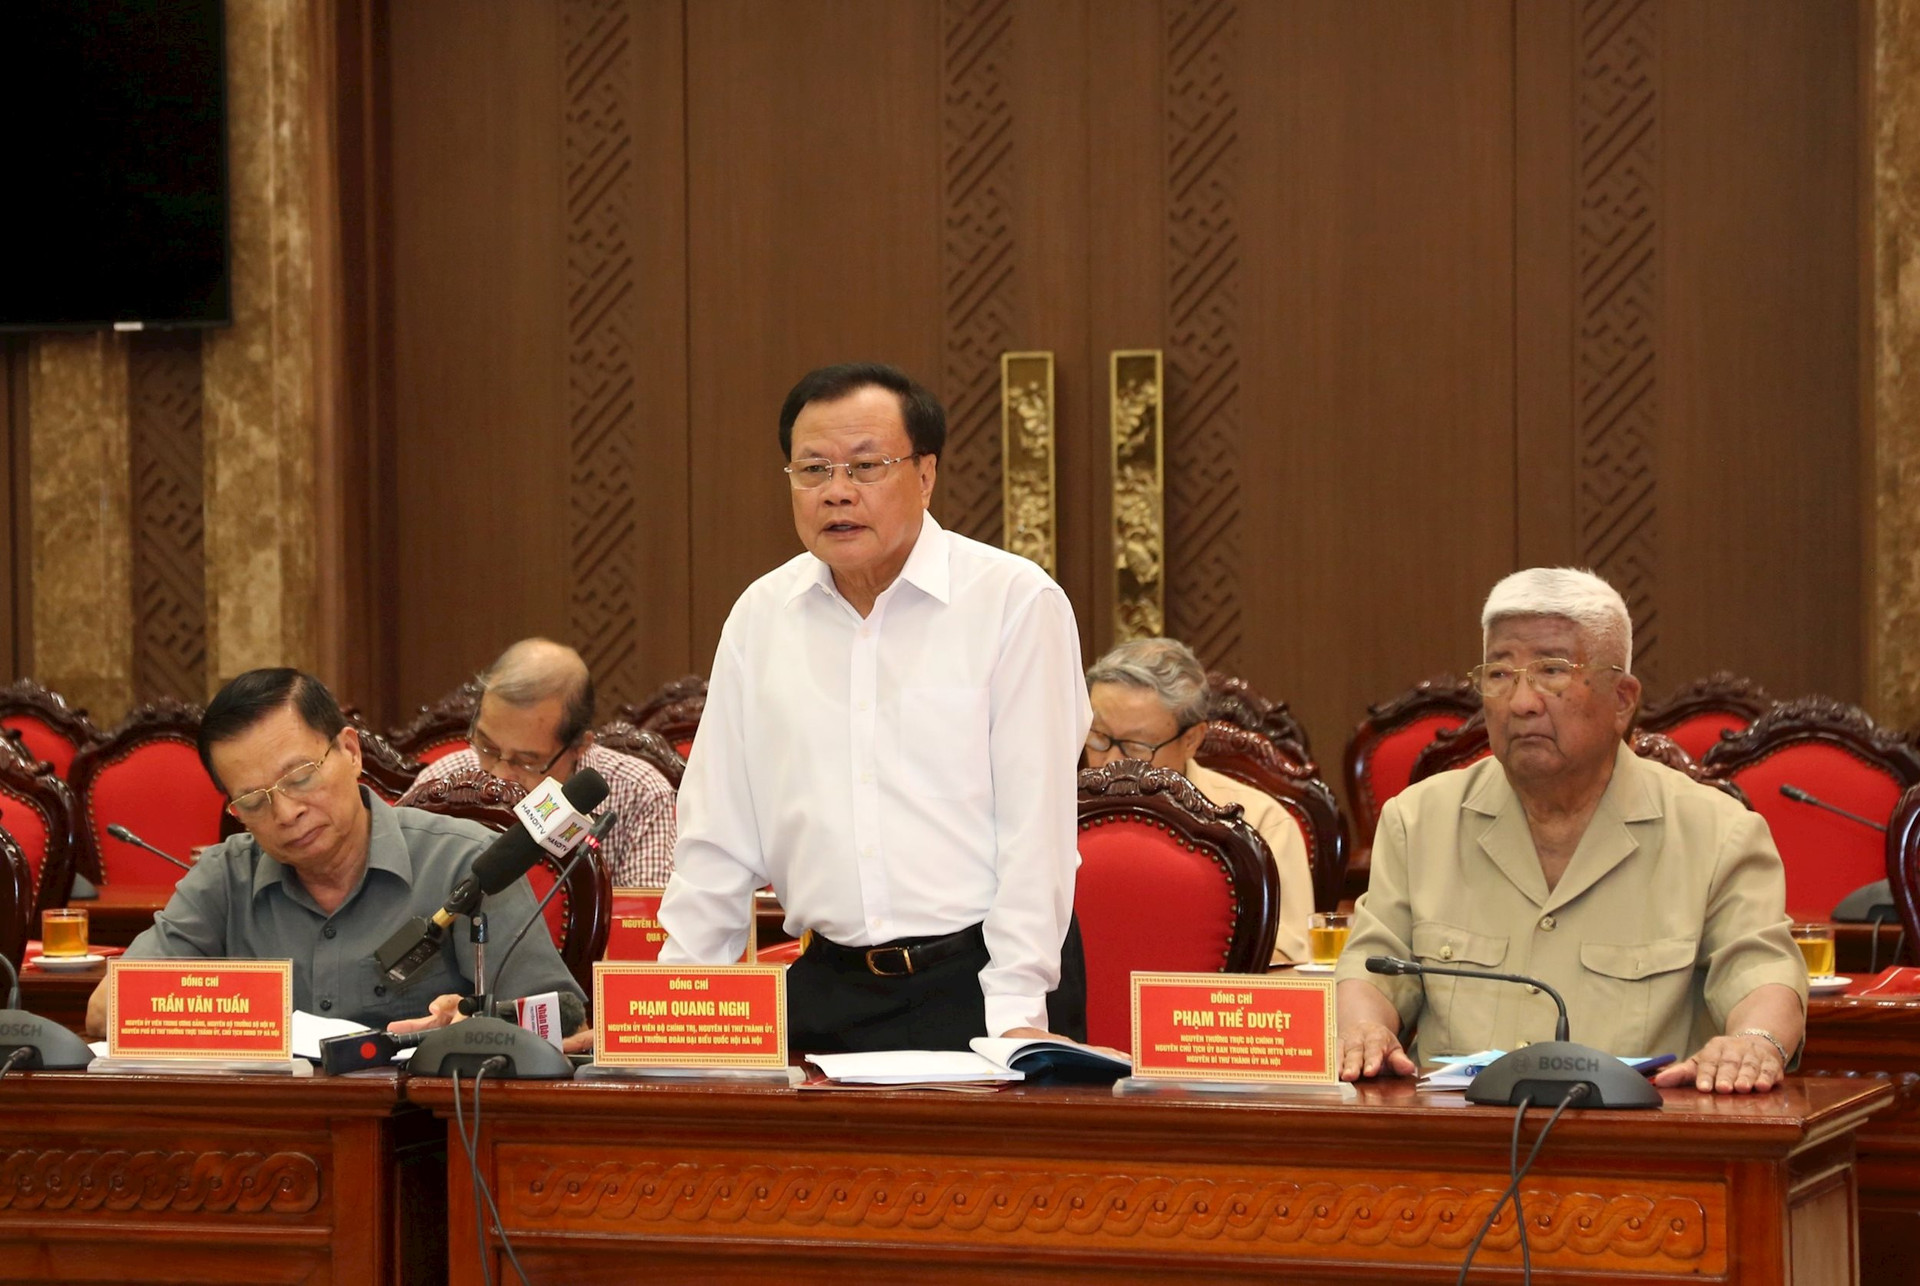 Nguyên lãnh đạo thành phố đề xuất cho Hà Nội quyết định mức xử vi phạm trật tự xây dựng đến gấp 50 lần